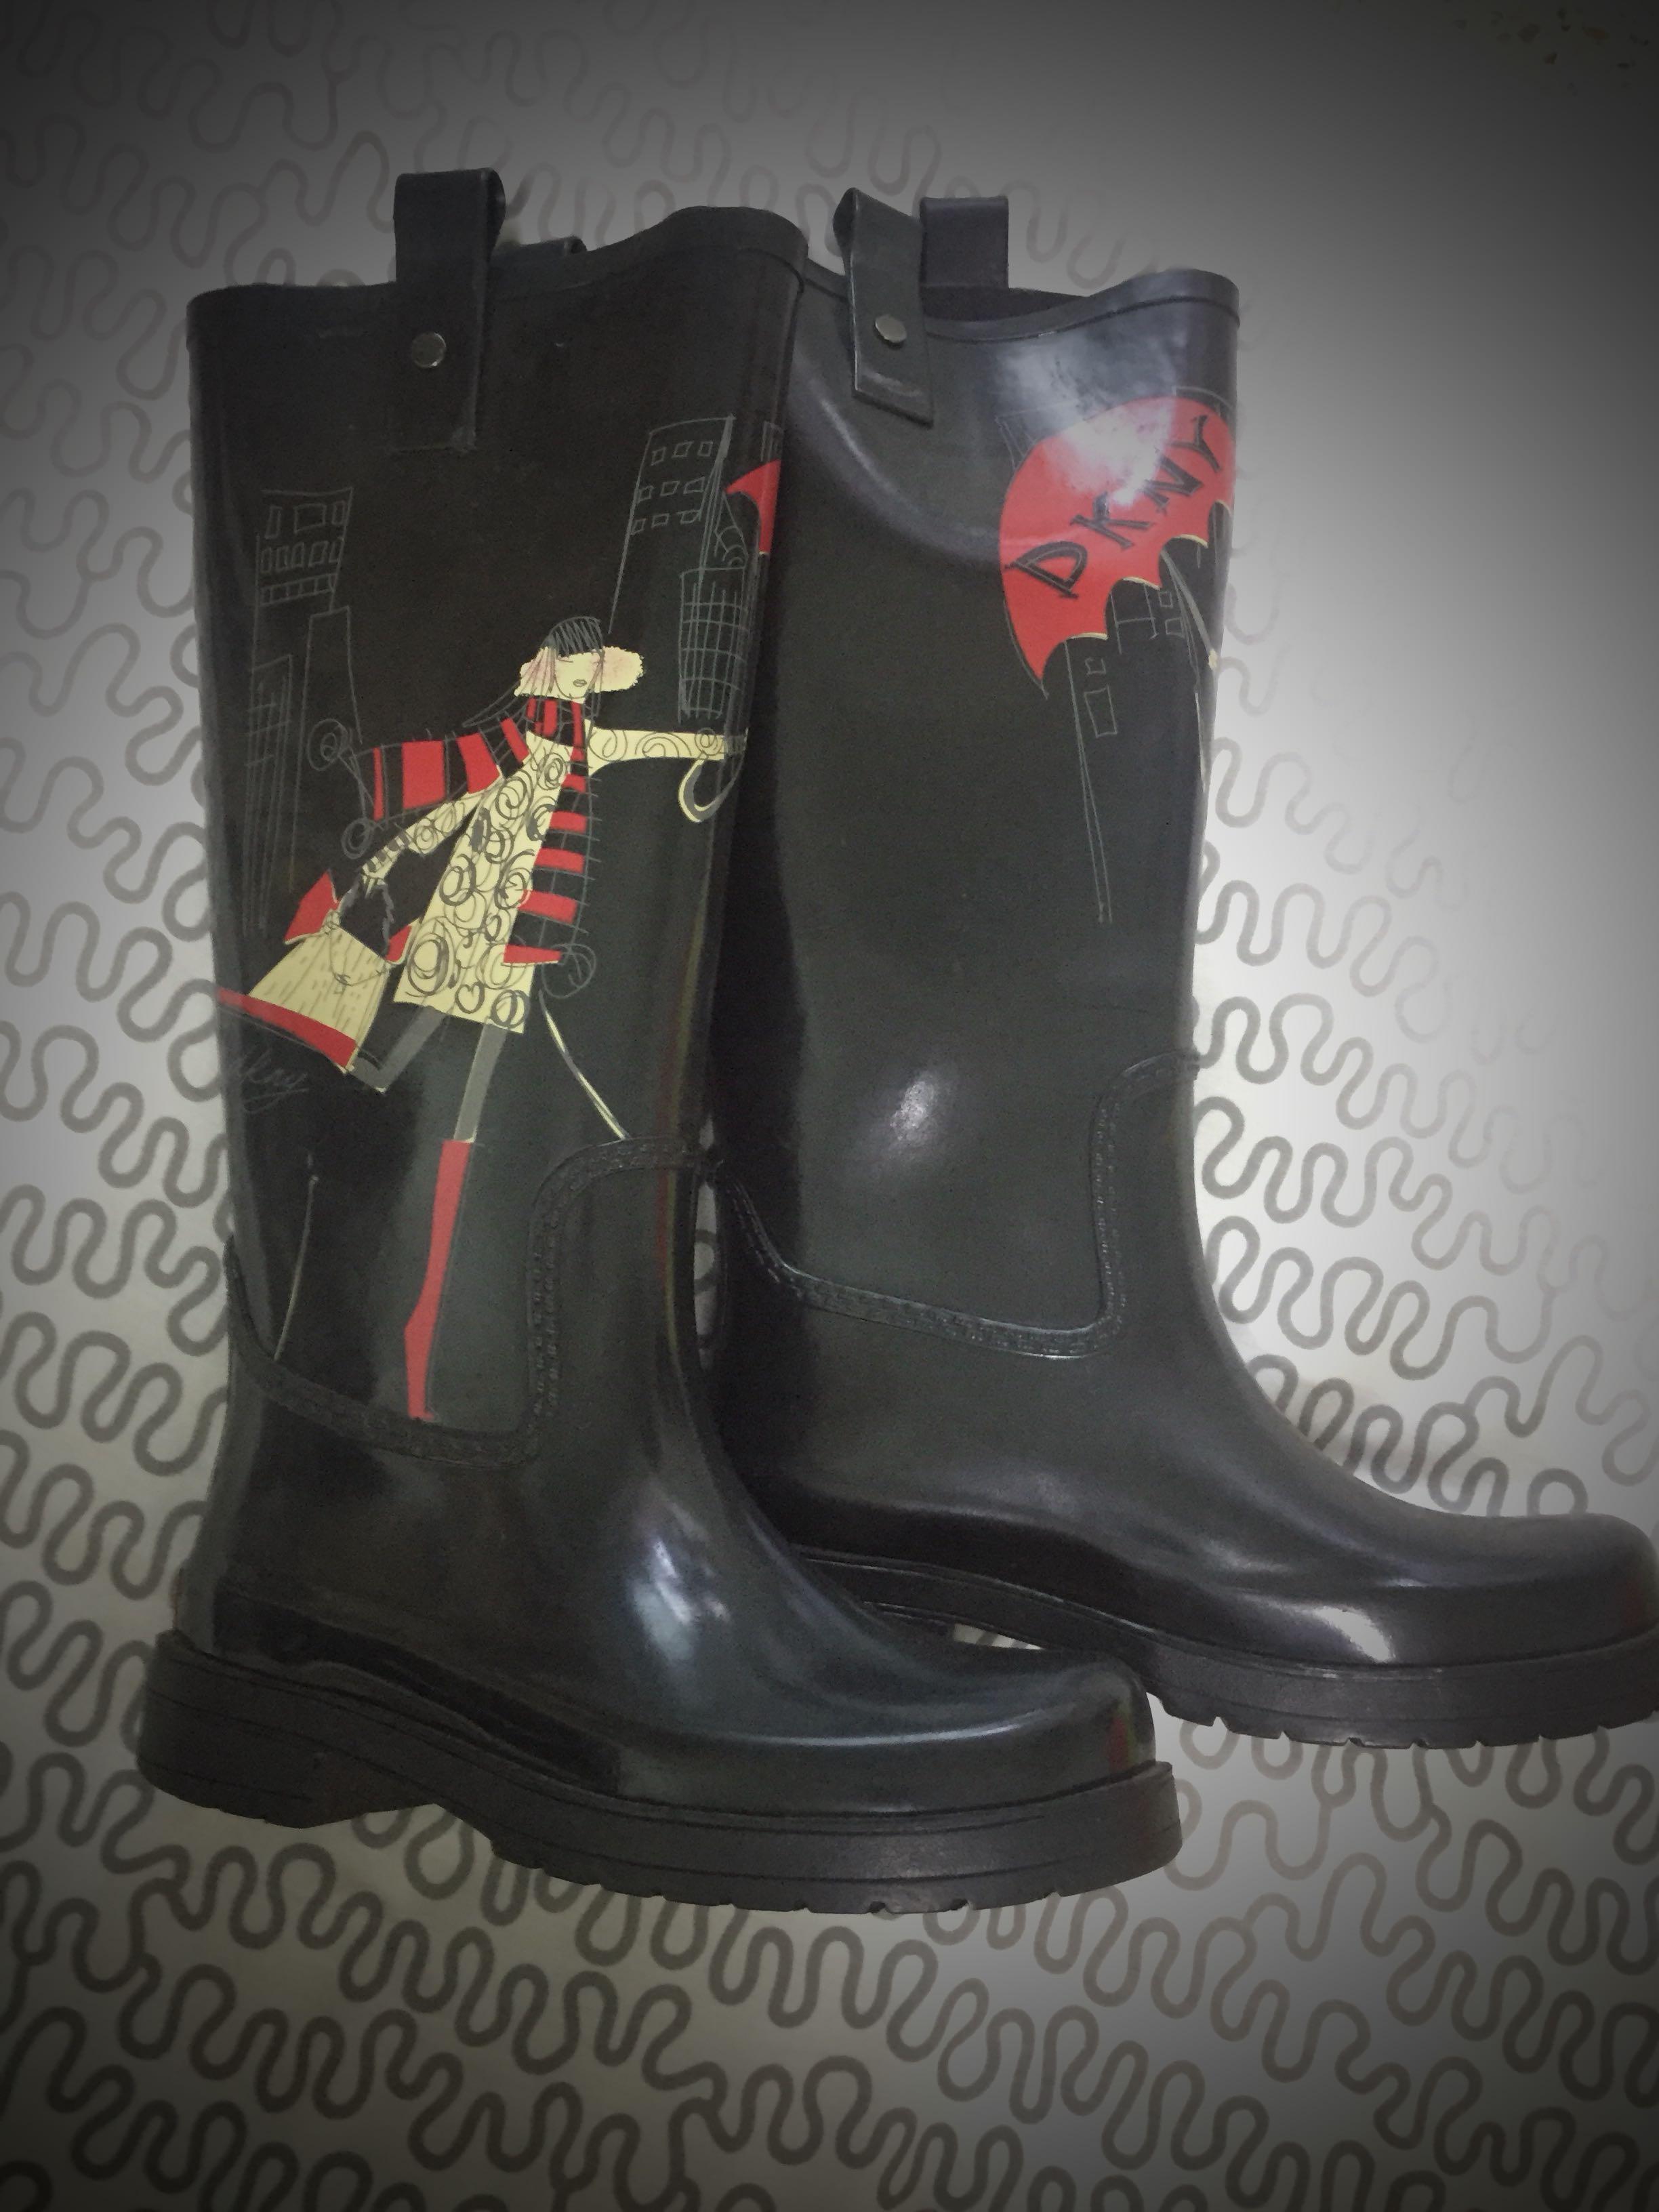 dkny rain boots